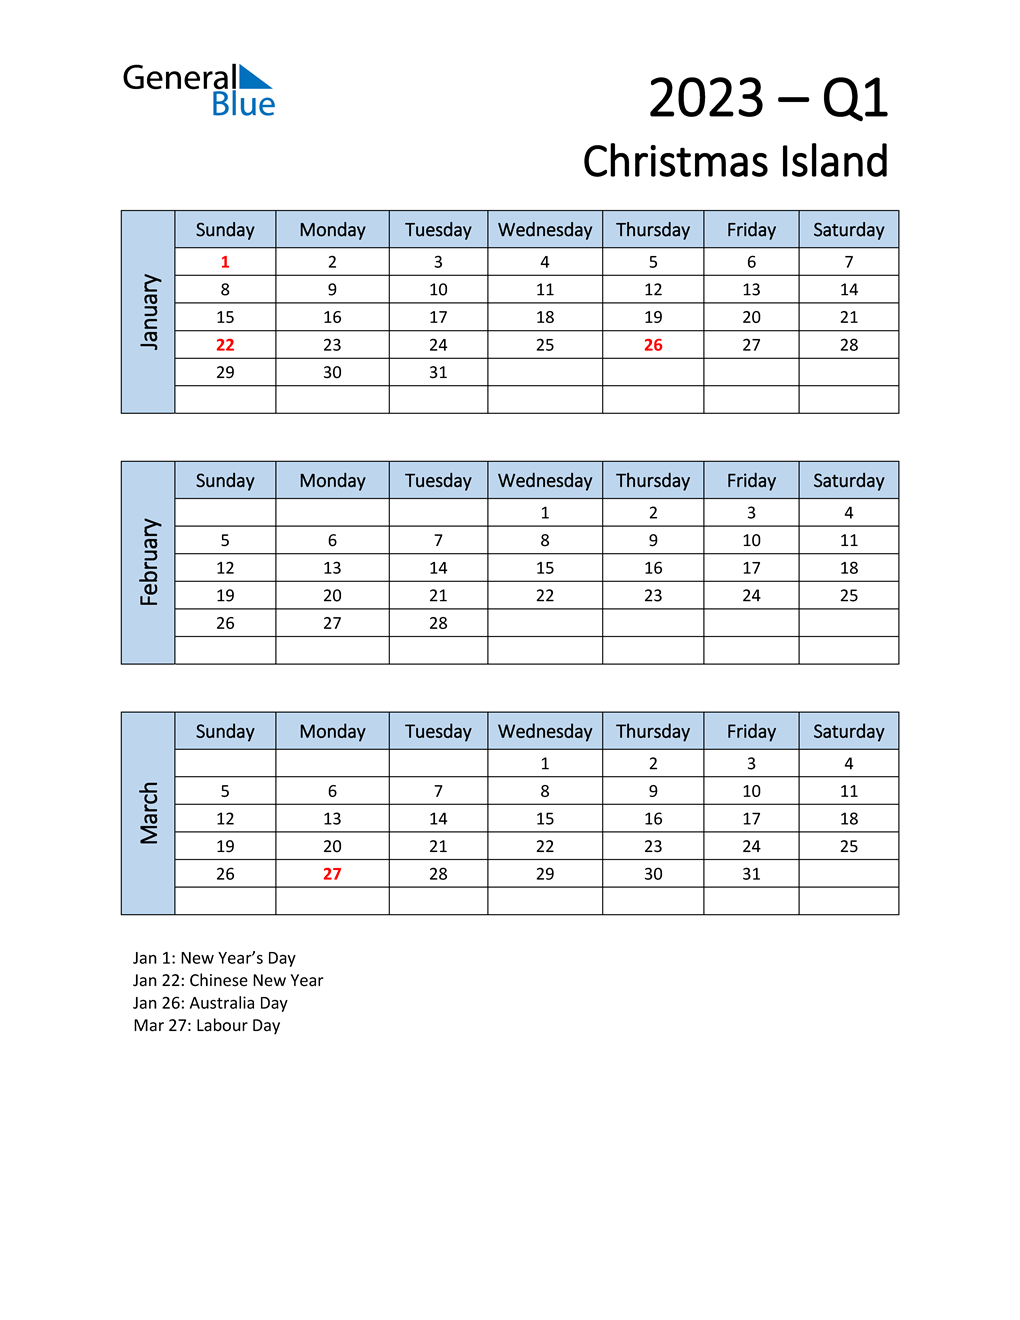  Free Q1 2023 Calendar for Christmas Island